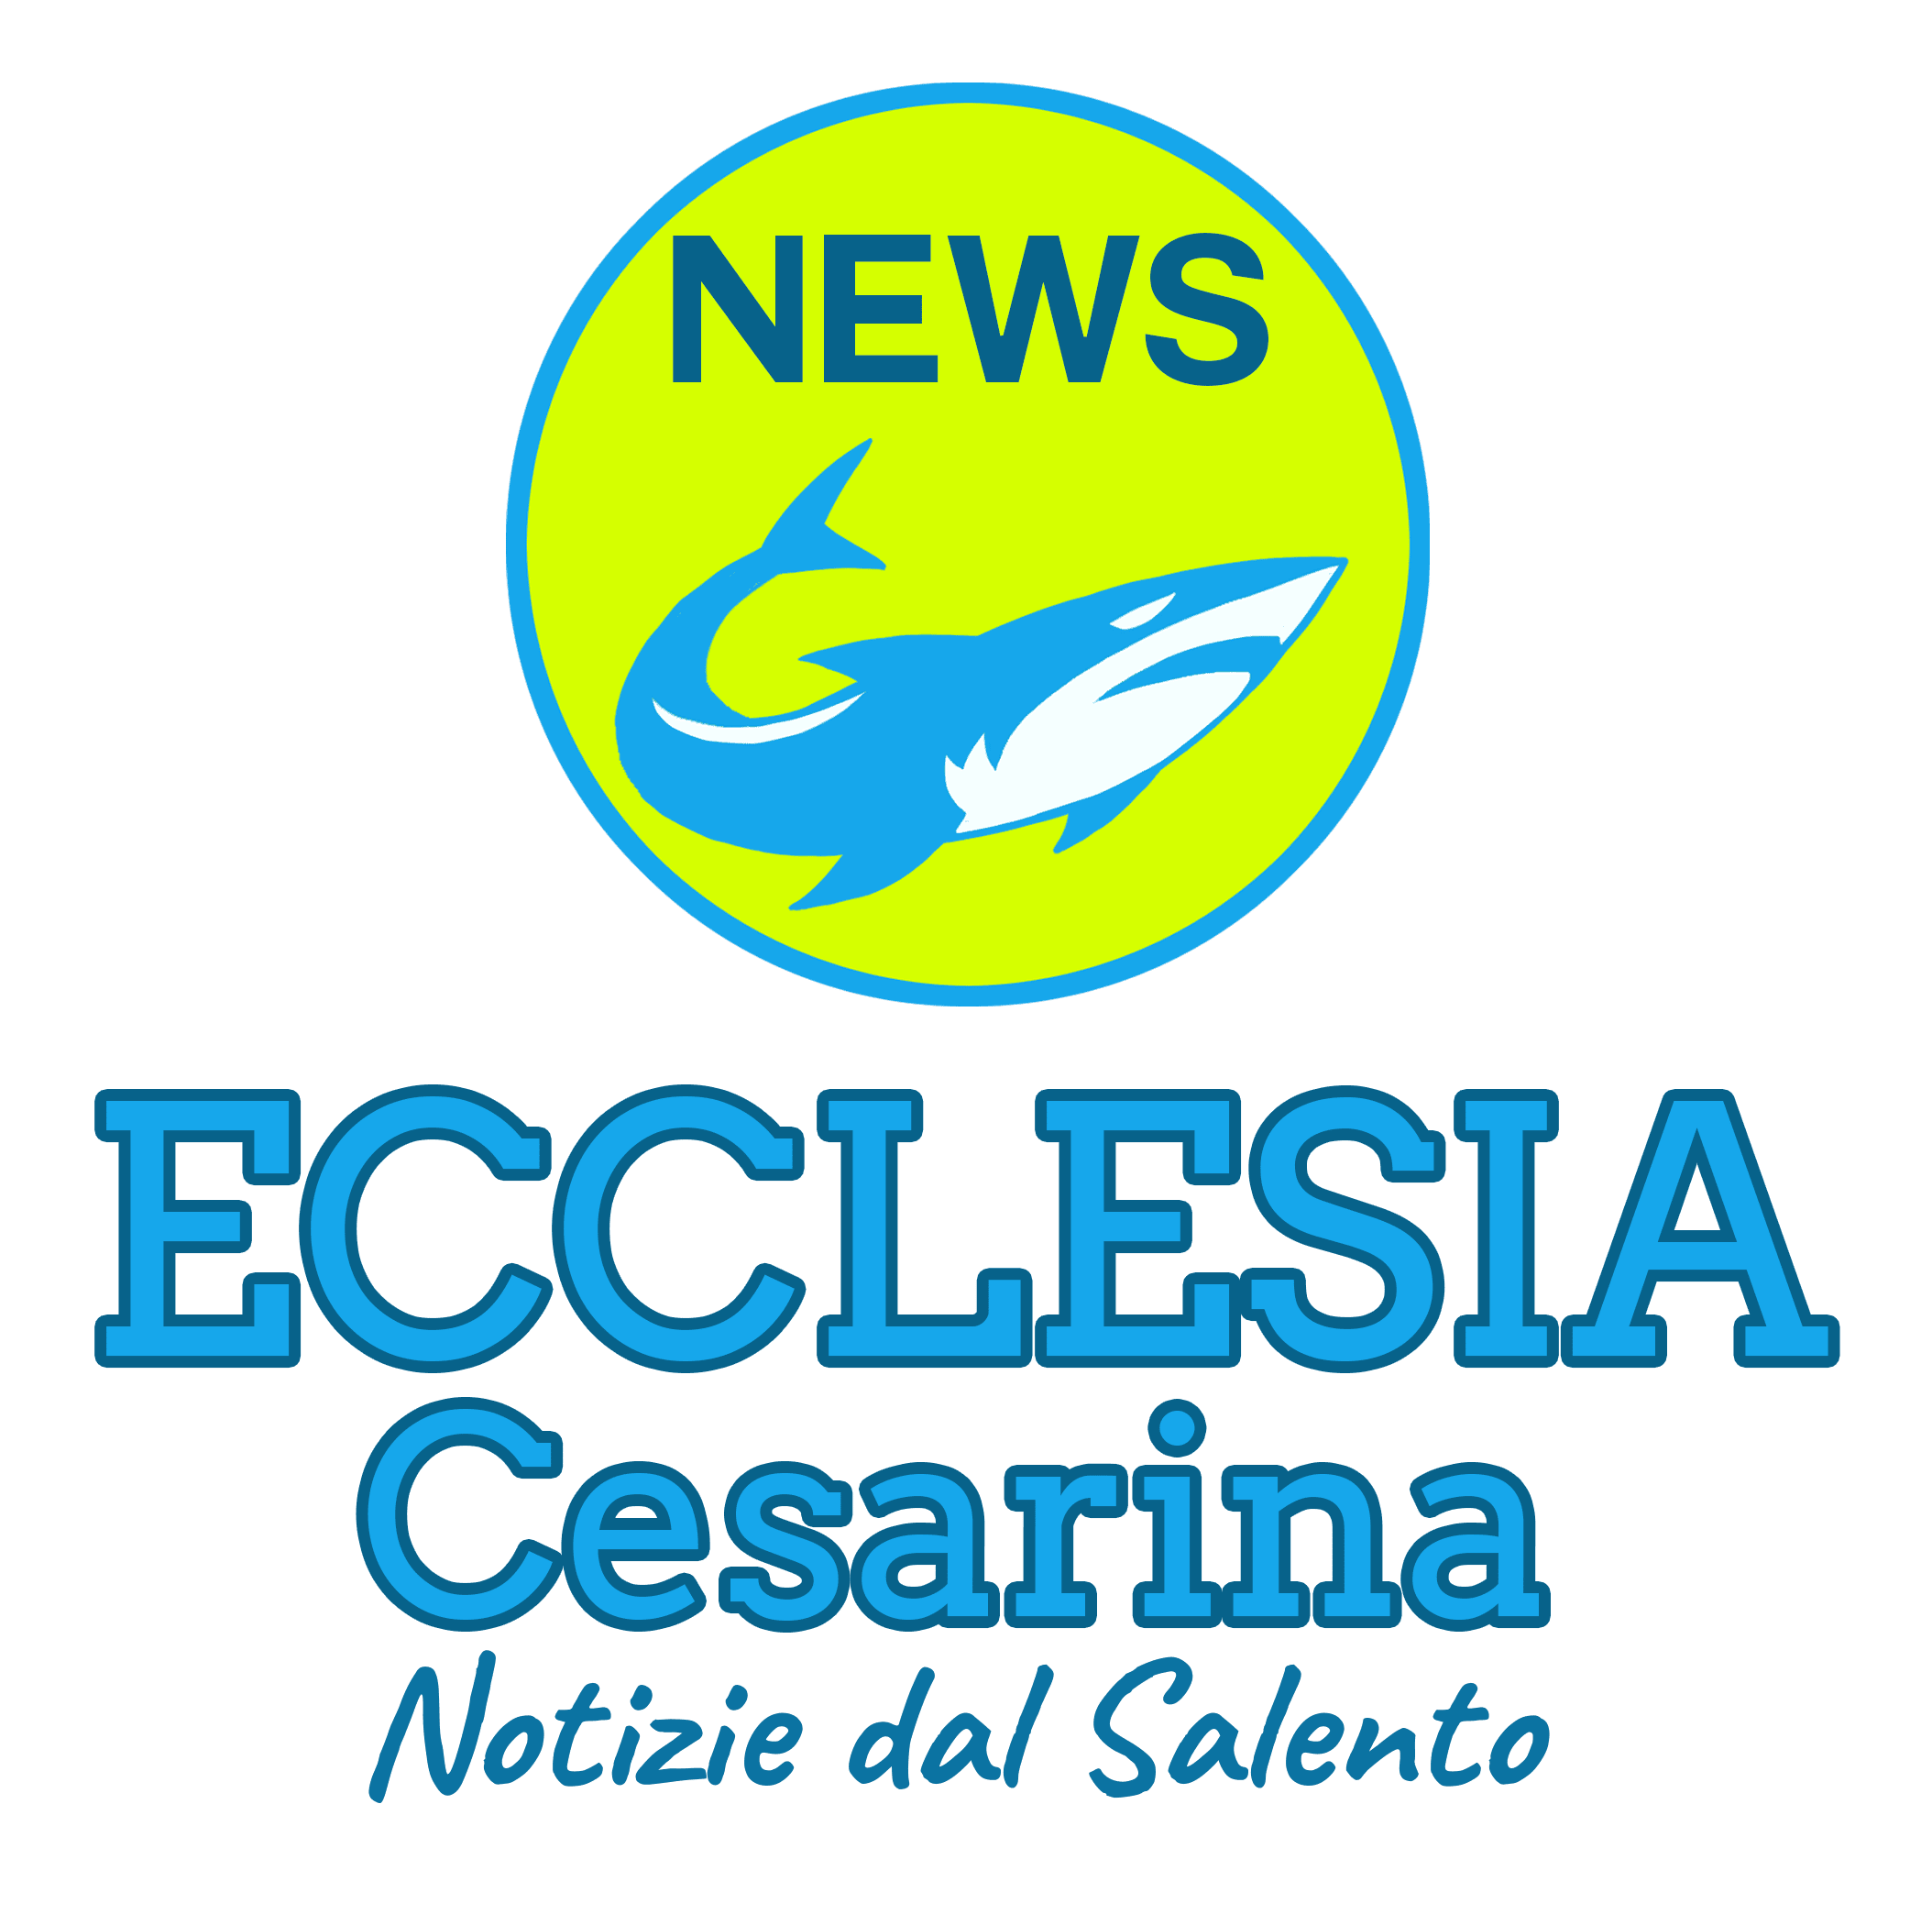 ECCLESIA Cesarina - Notizie da Porto Cesareo per il Salento